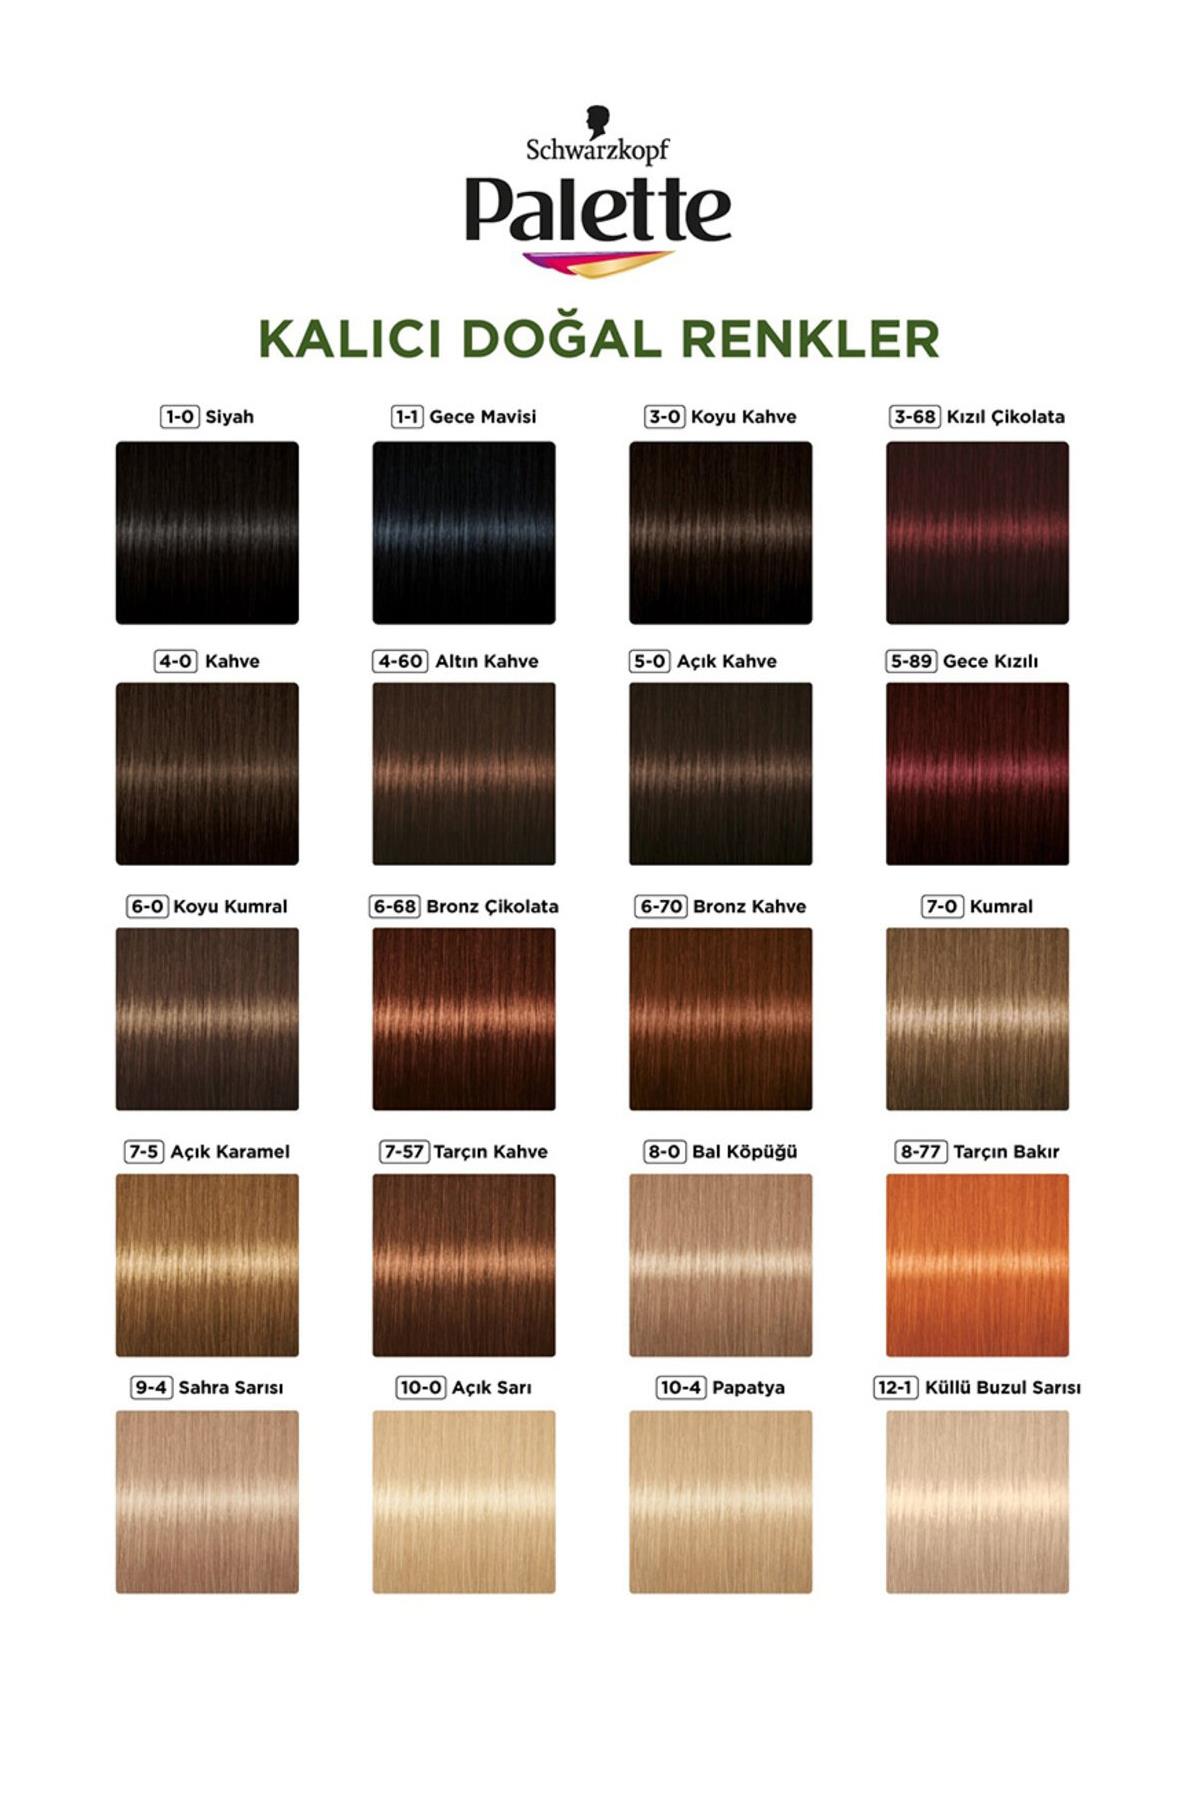 palette-kalici-dogal-renkler-sac-boyasi-no-7-60-findik-kahve-6554-1.jpg